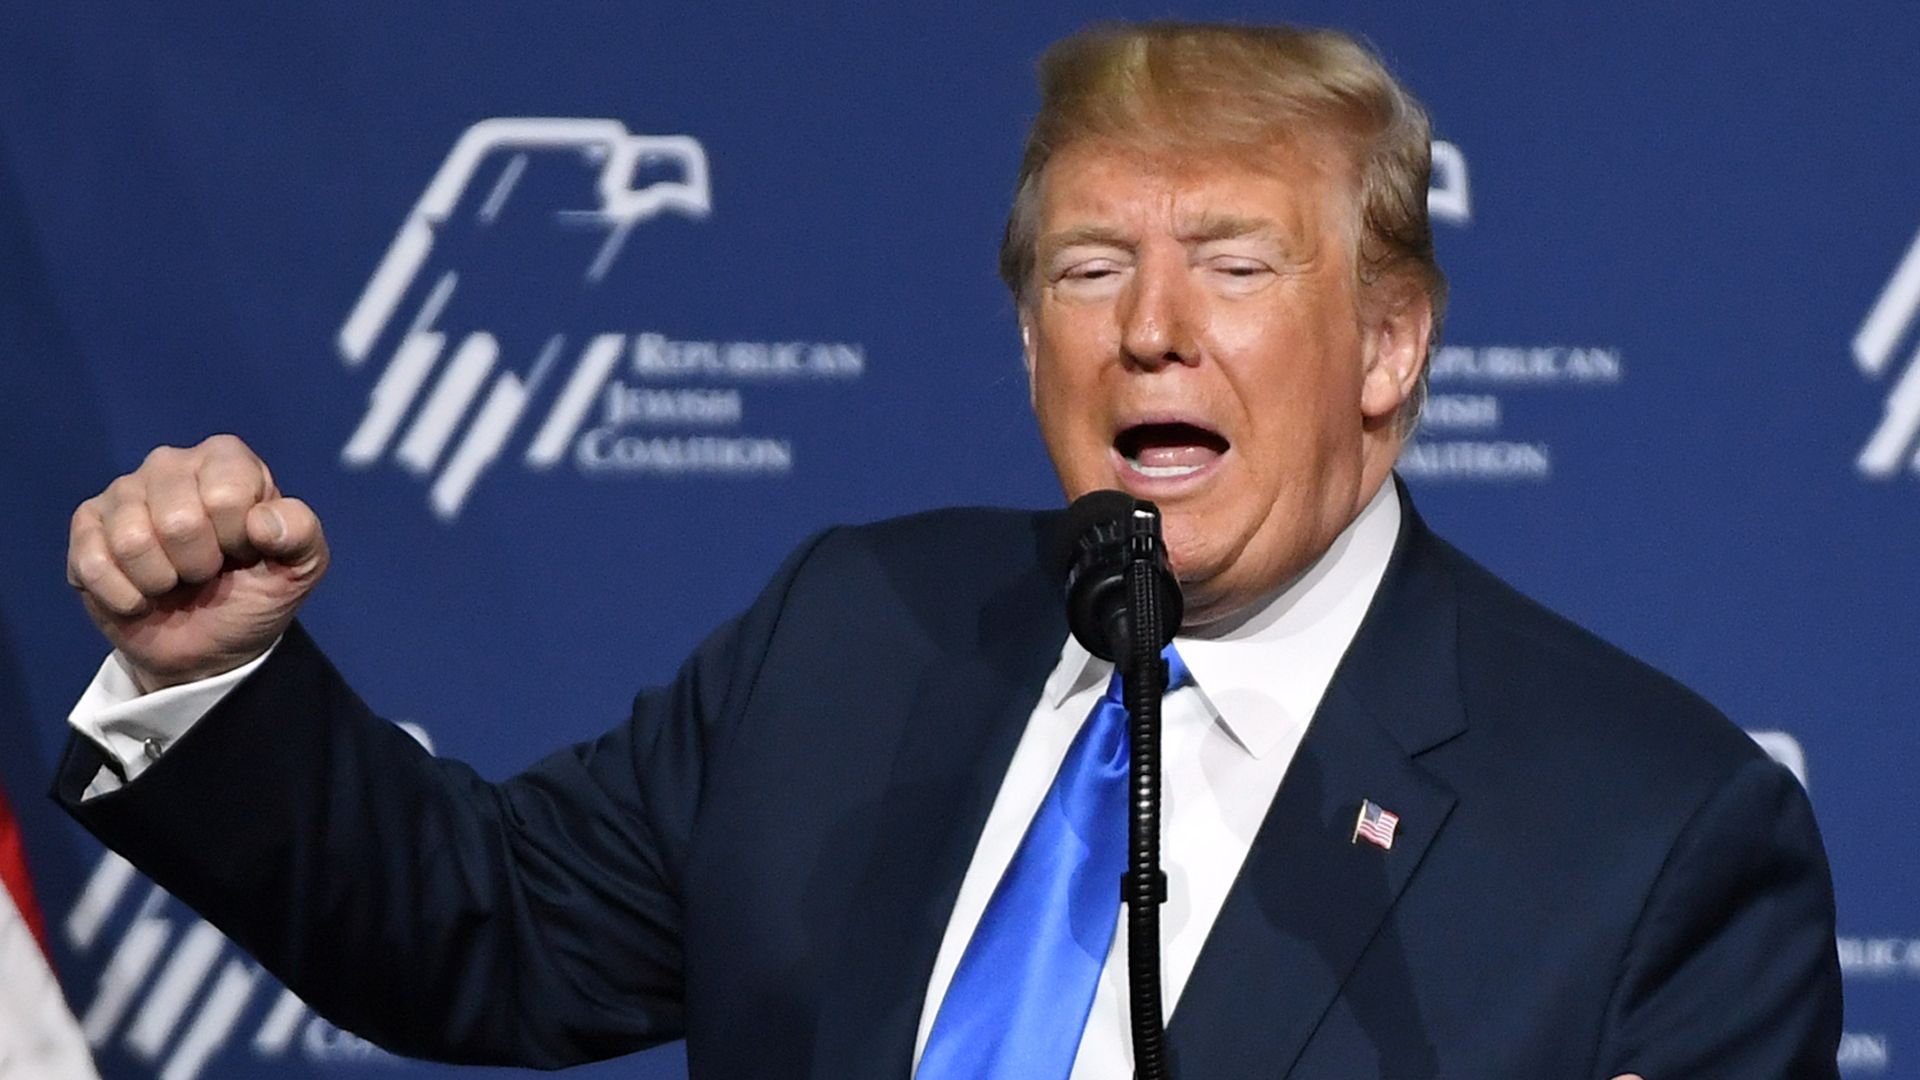 Donald trump fist pumping at a podium